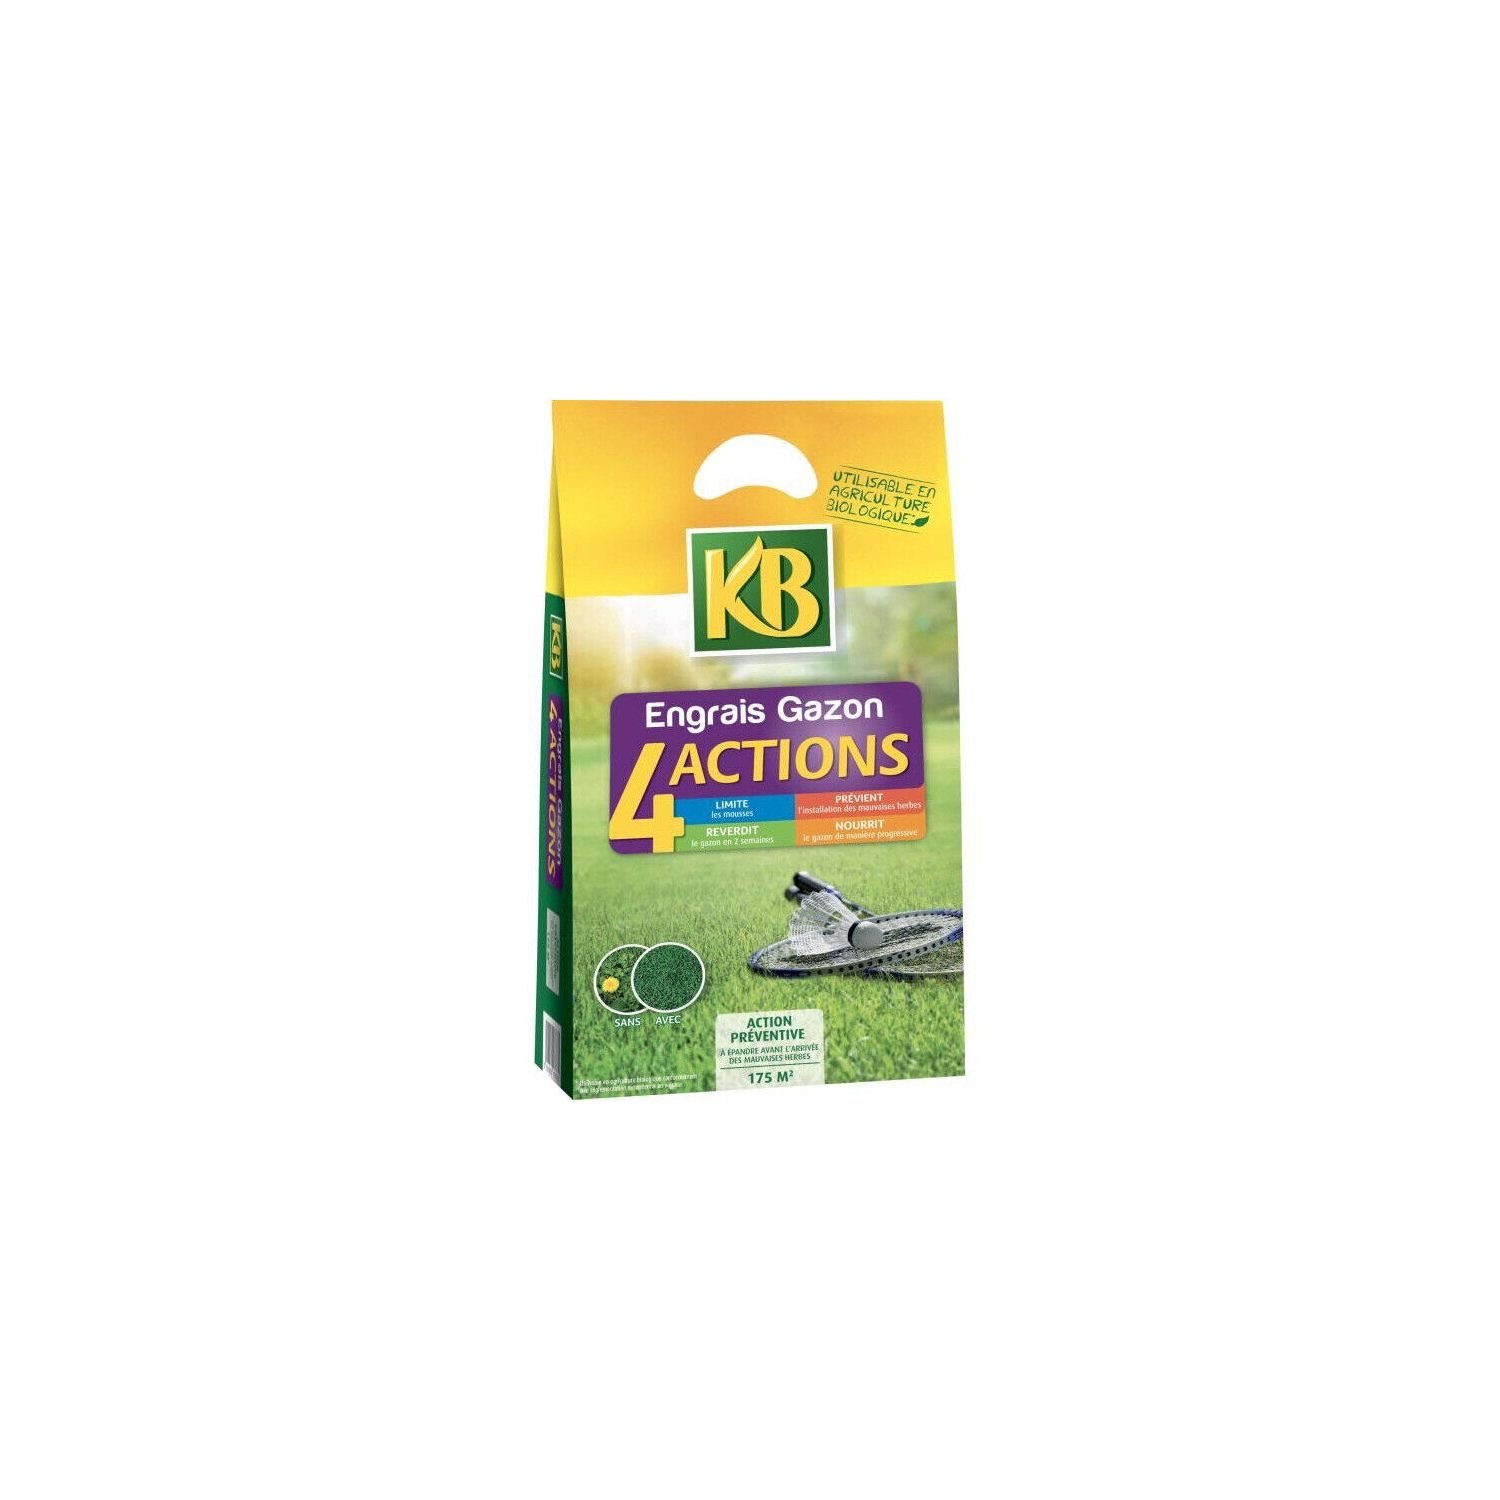 Engrais et fertilisants KB Engrais à Gazon K4MP - 4 Actions - 7 kg